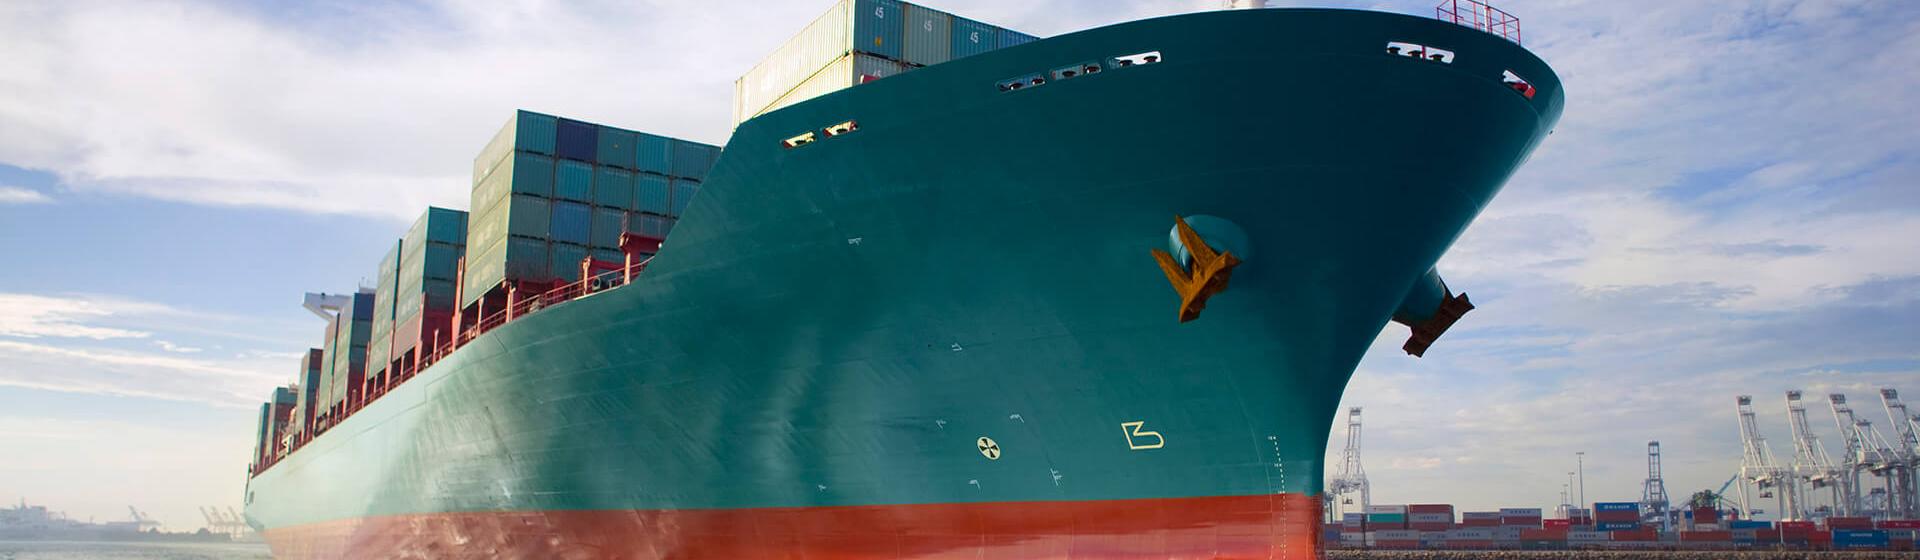 سفينة تحمل حاويات بضائع تتحرك عبر الميناء مع وجود رافعات في الخلفية كما تظهر من مستوى سطح البحر.